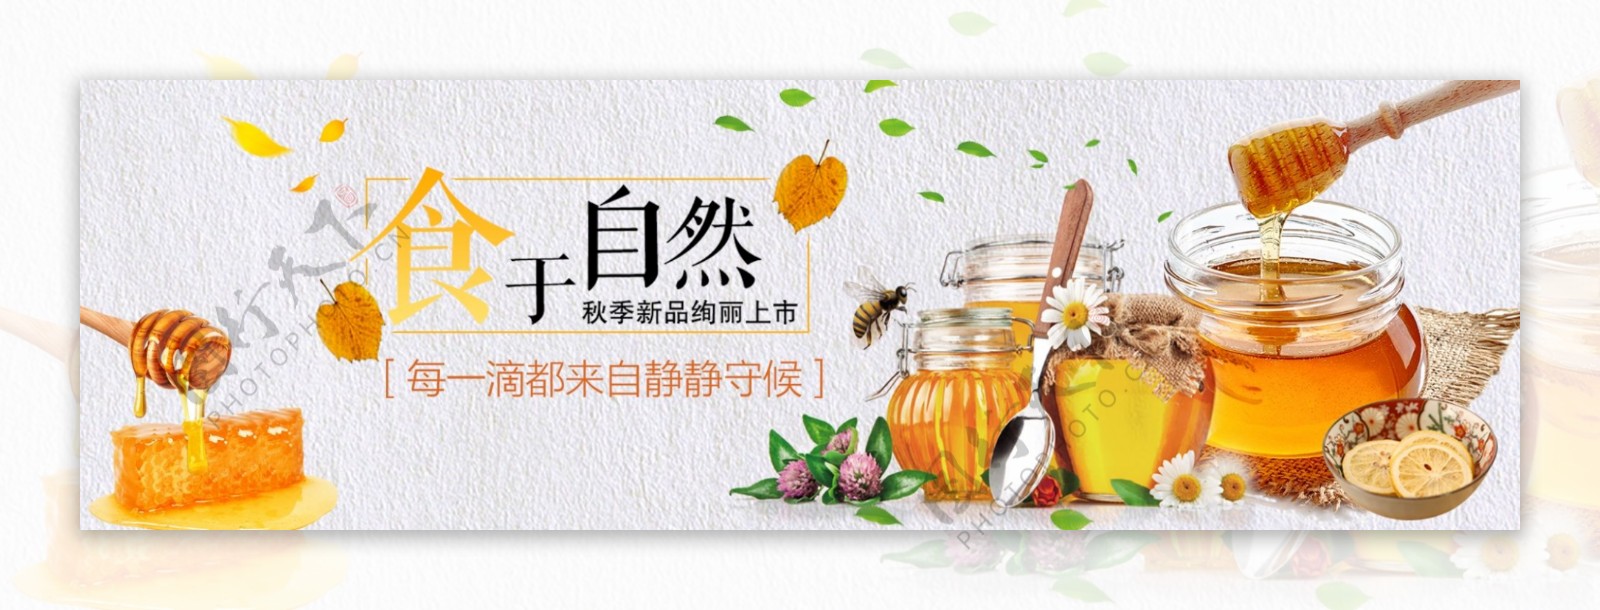 蜂蜜零食食品海报模板